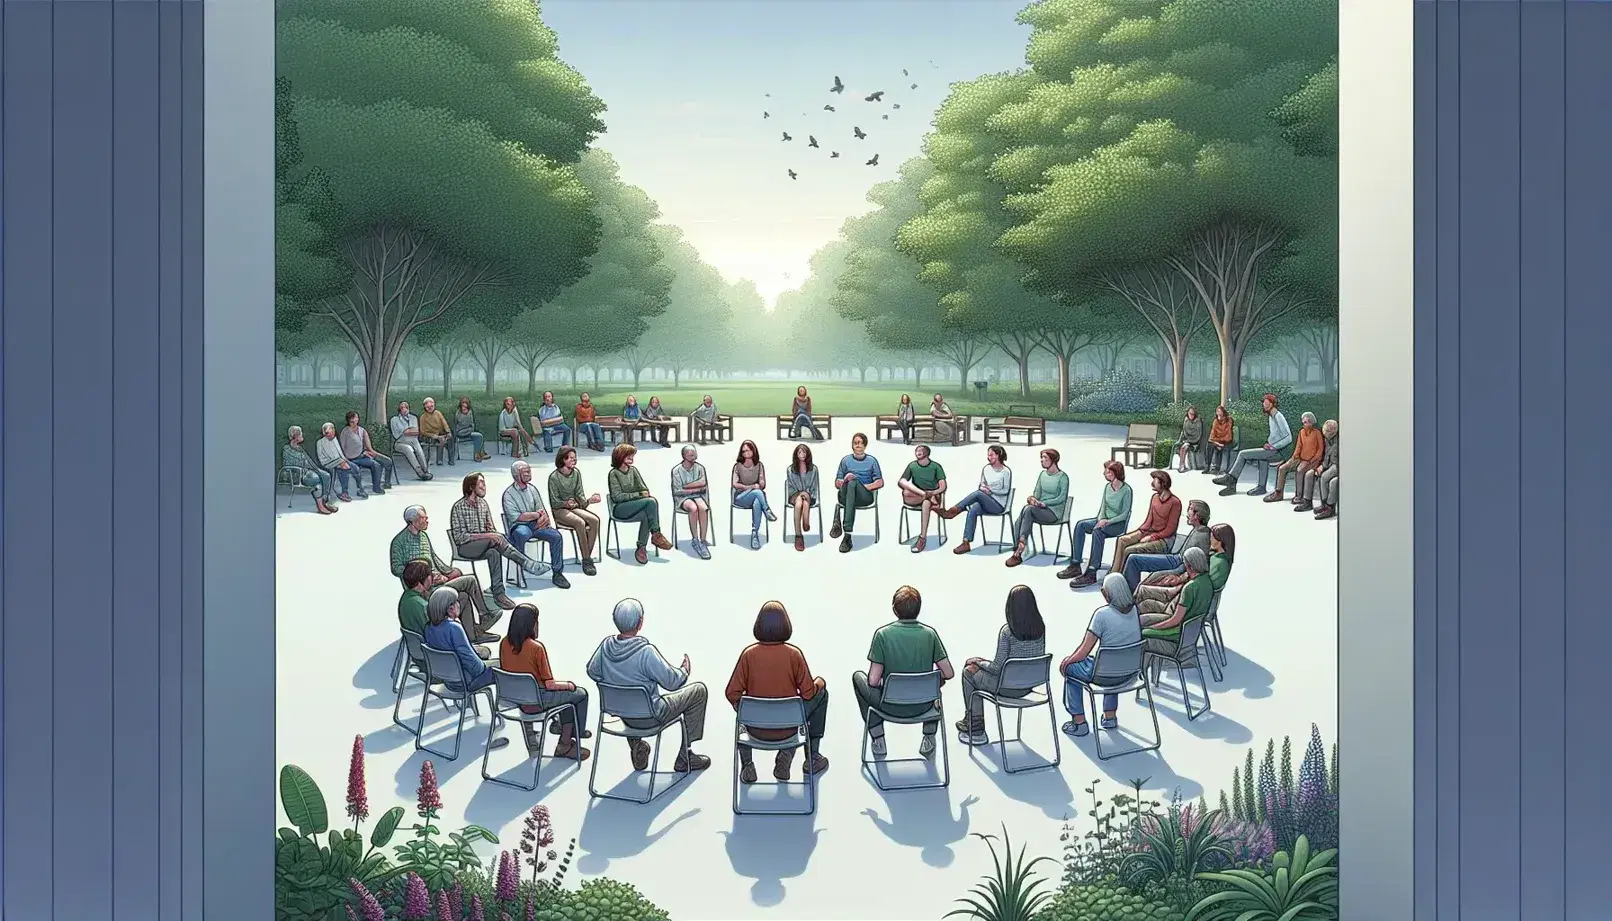 Gruppo di persone sedute in cerchio in un parco, discutendo attivamente in un ambiente naturale e tranquillo.